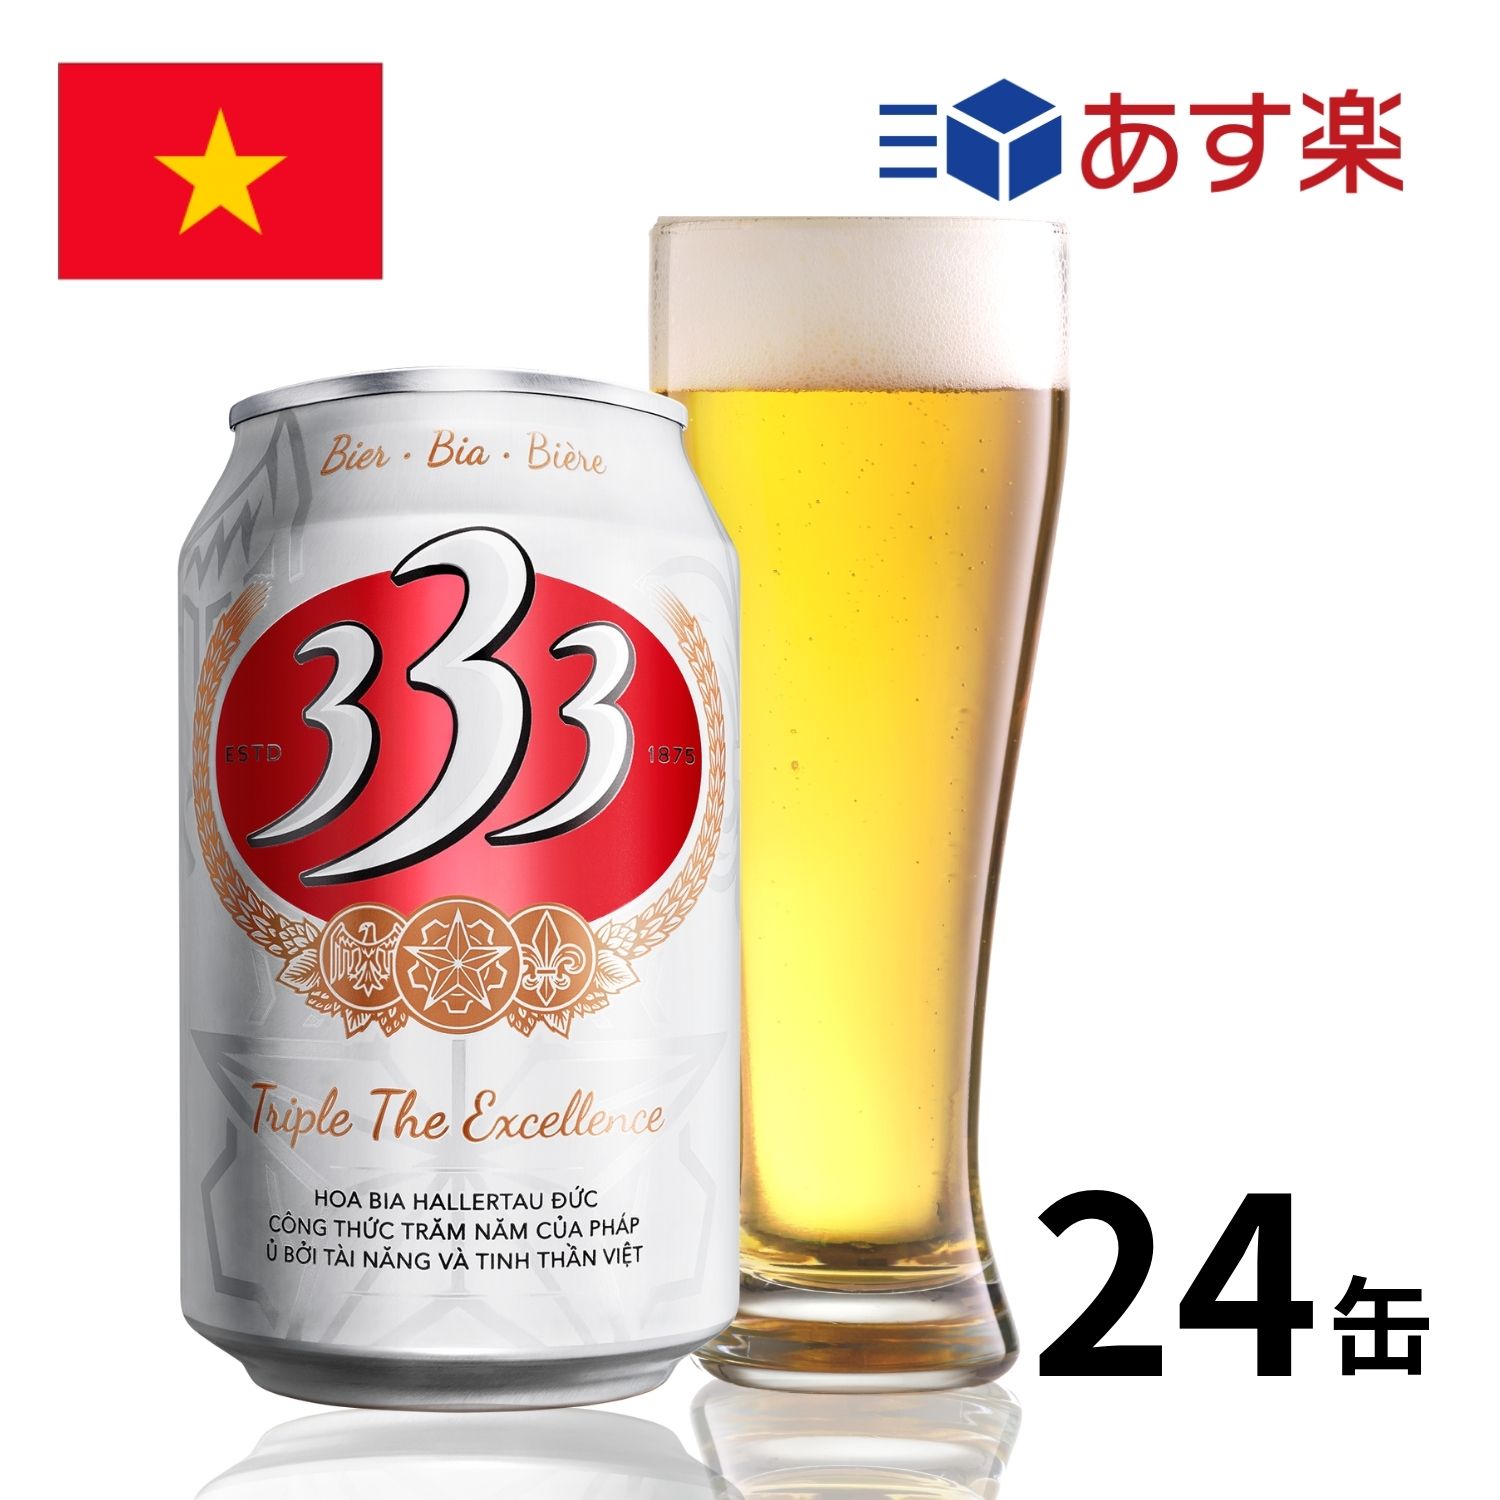 ［あす楽］ベトナム 333ビール缶 (330ml x 24本入) 333 バーバーバ― クラフトビール 世界のビール 海外ビール ビール 正規輸入品 あす楽